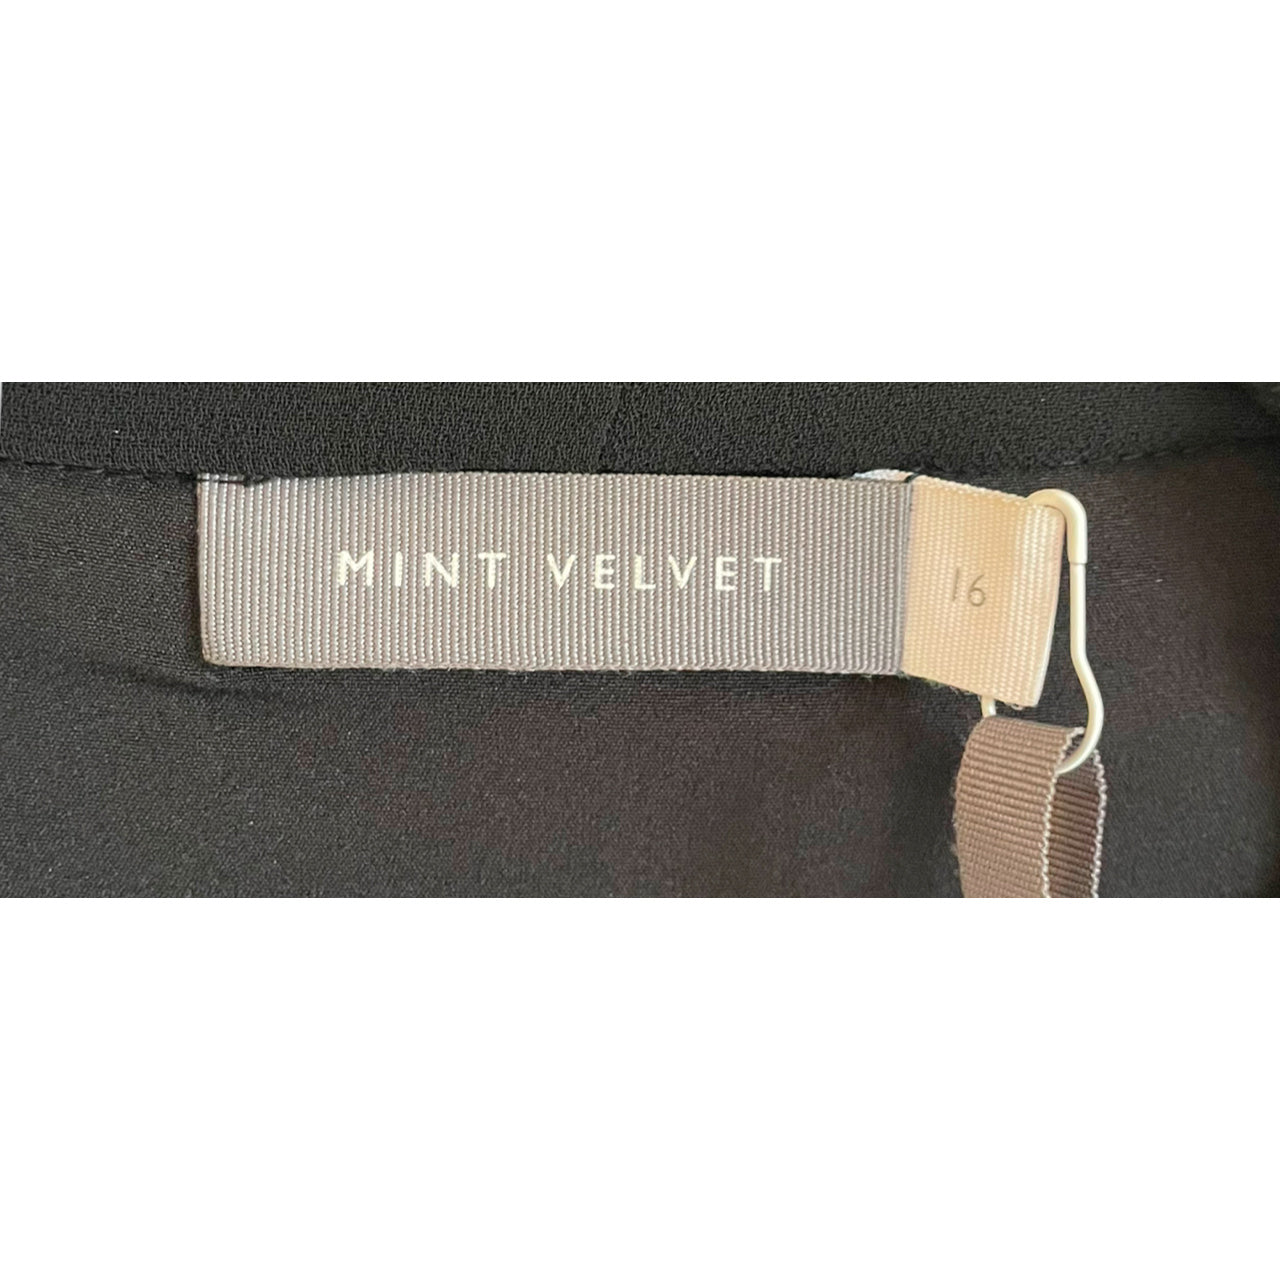 Mint Velvet Black & Silver Beaded Top